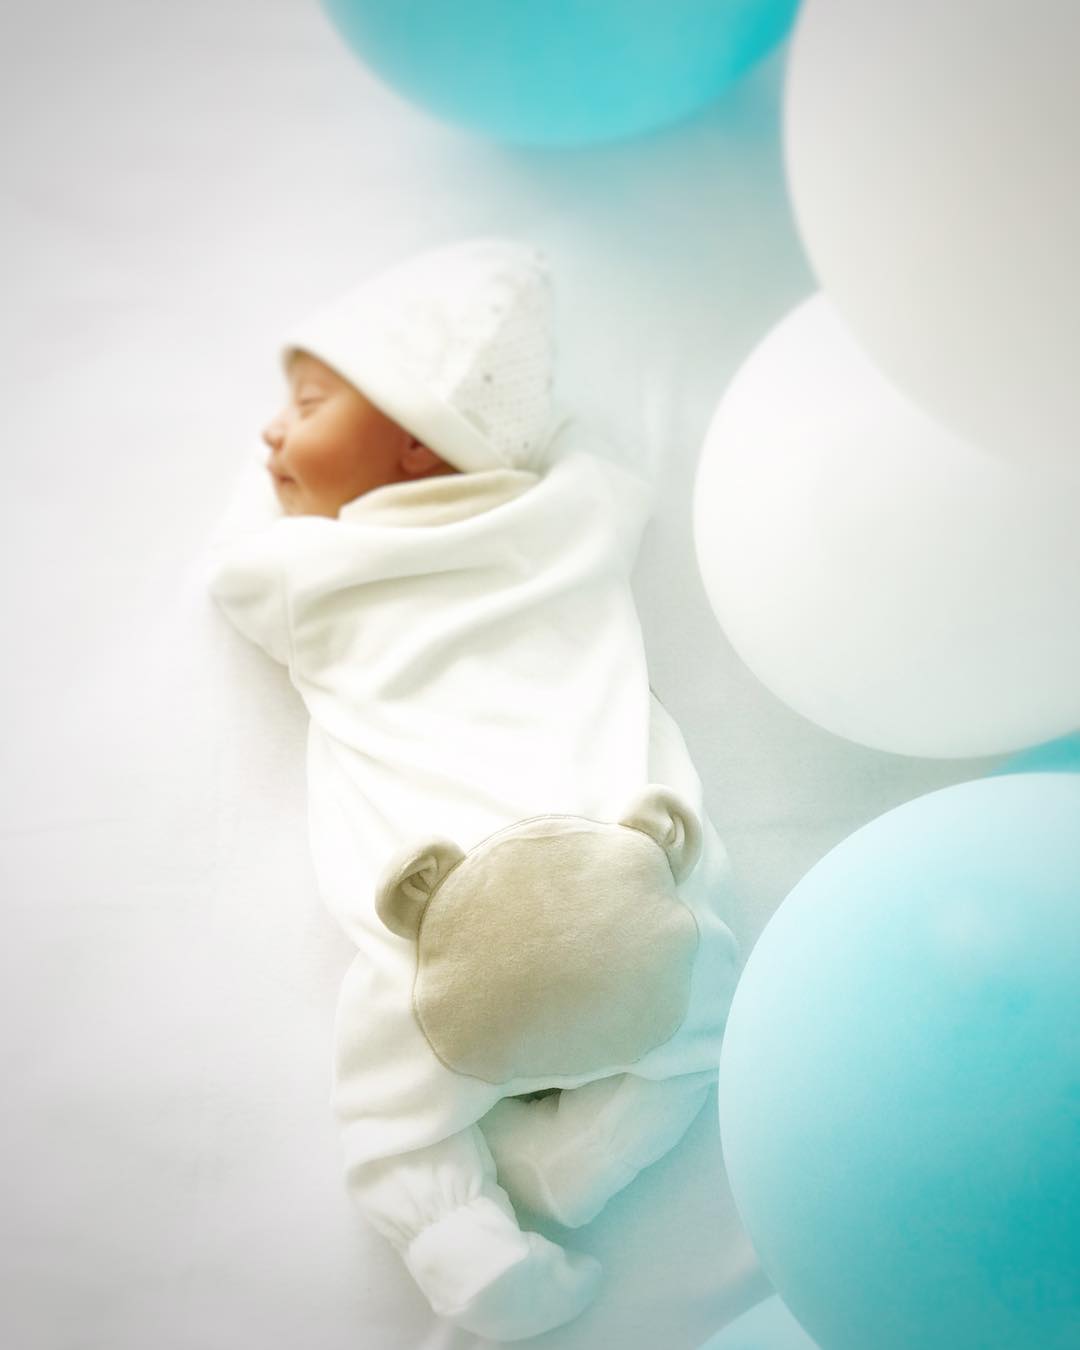 2018 começou a “dar os seus frutos” quando Lourenço, o terceiro filho de Núria Madruga e Vasco Silva, nasceu a dia 2 de janeiro. | Foto via Instagram @nuriamadruga